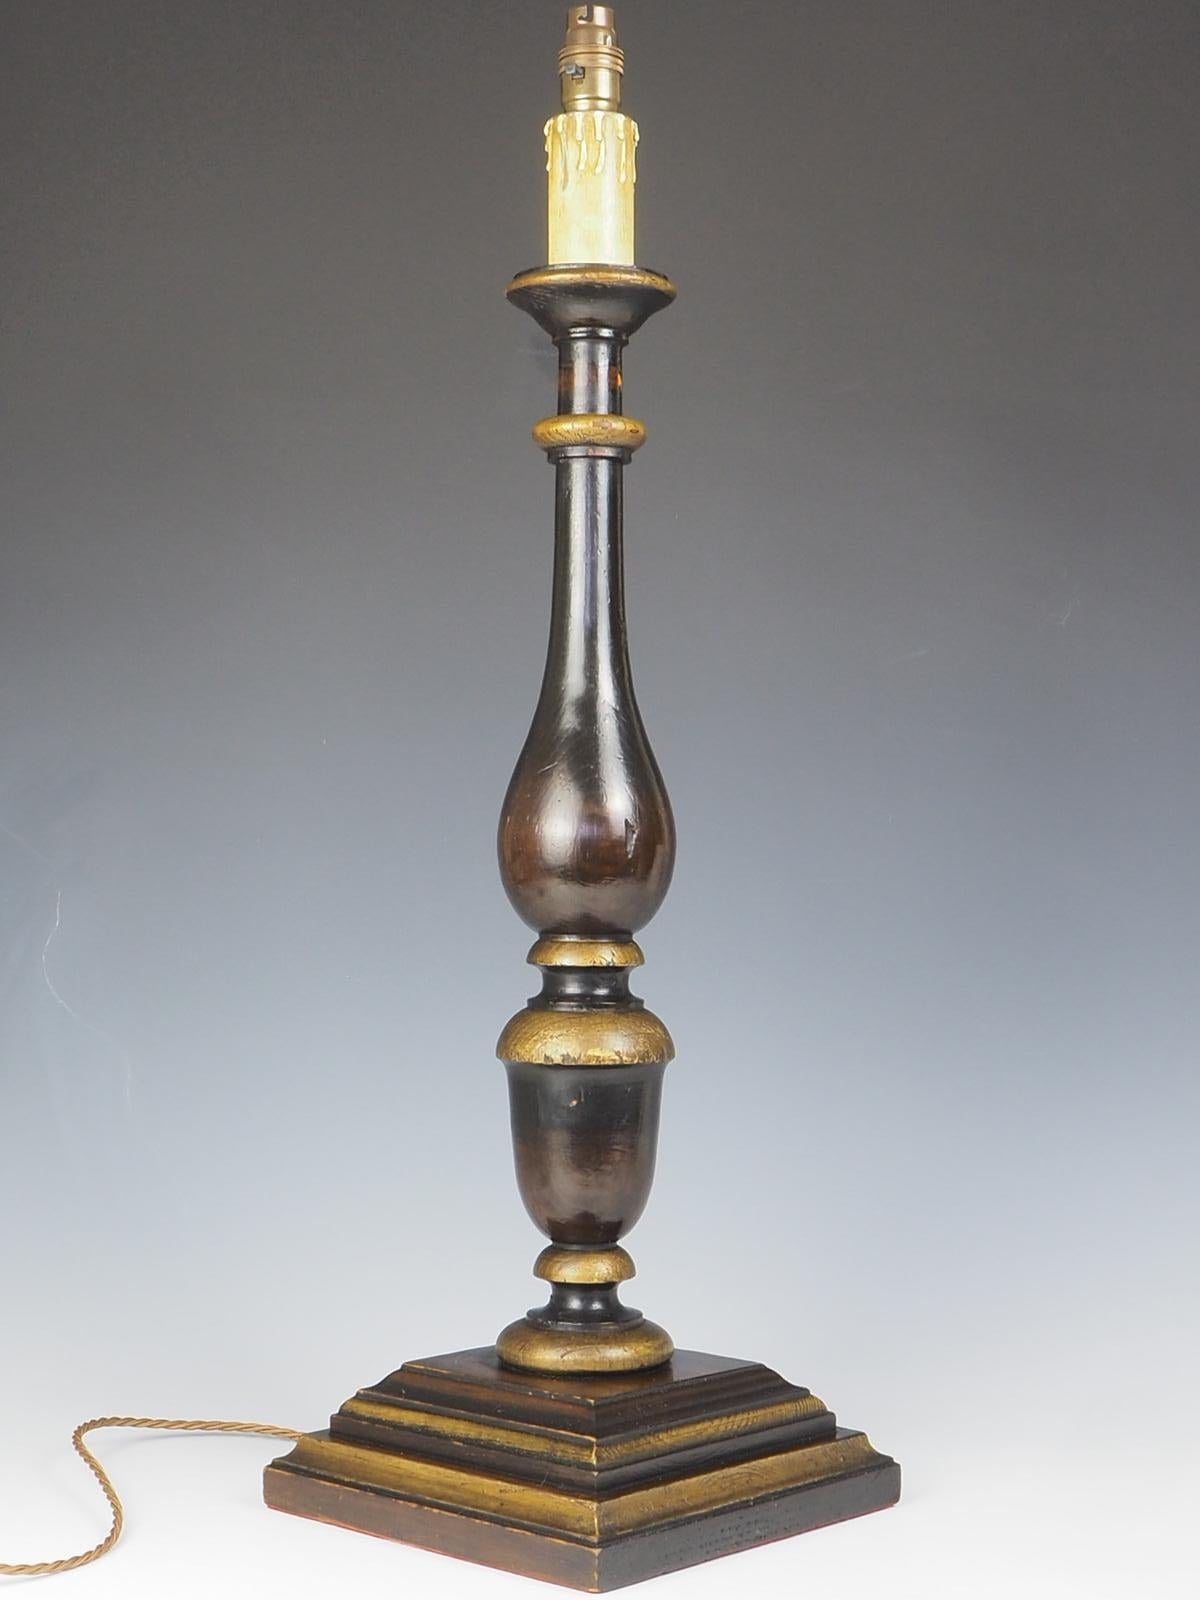 The House of Antiques, lampe de table de style champêtre anglais.

Cette exquise lampe de table antique présente un haut cadre solide en bois avec une étonnante finition en bois bicolore, ajoutant une touche de sophistication à n'importe quelle